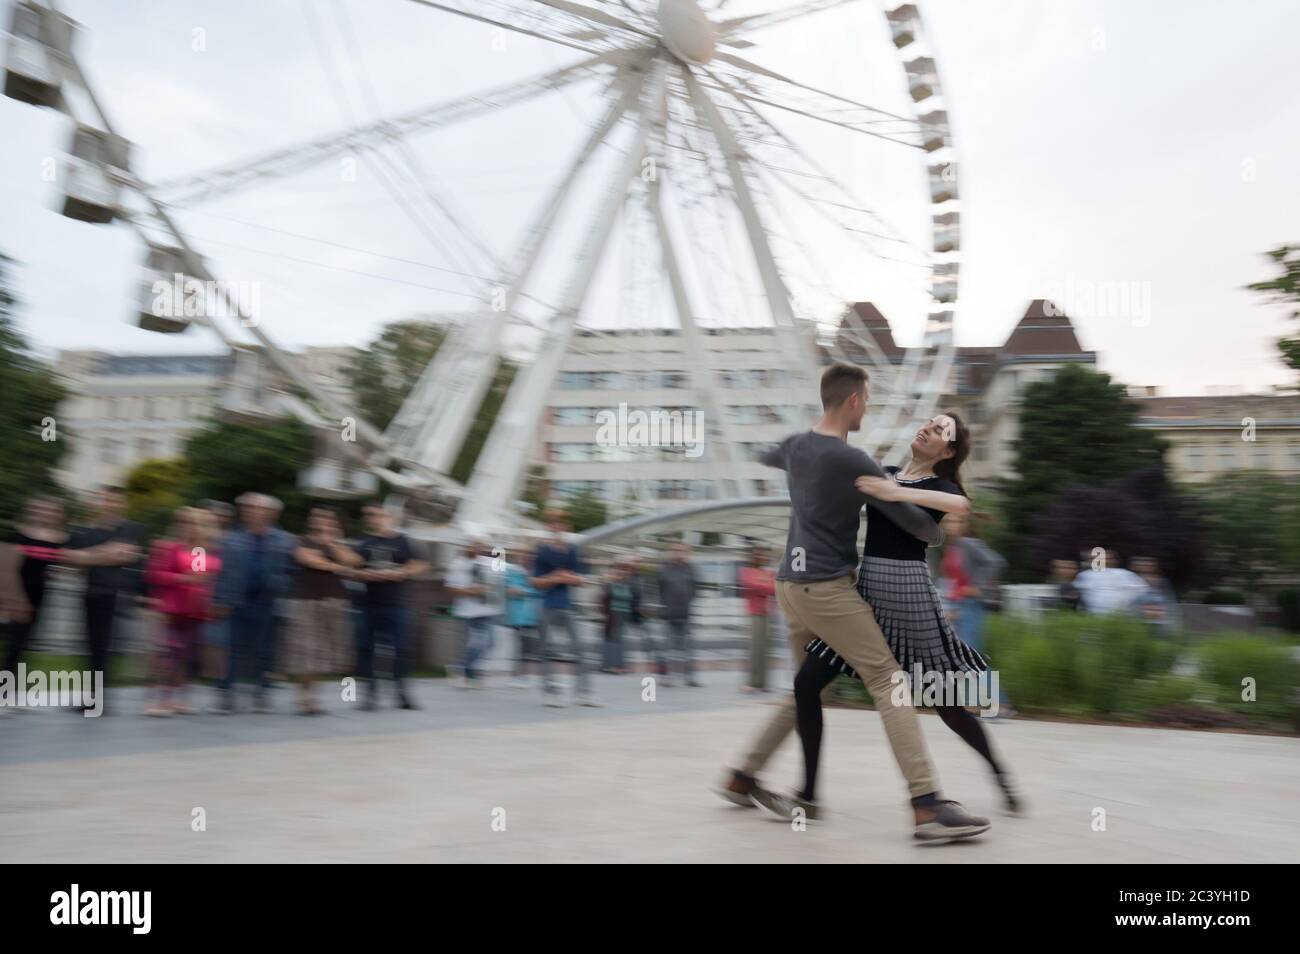 Pékin, Hongrie. 21 juin 2020. Les gens profitent d'une fête de danse sociale sur une place publique après la levée des restrictions COVID-19 dans le centre-ville de Budapest, en Hongrie, le 21 juin 2020. Crédit: Attila Volgyi/Xinhua/Alay Live News Banque D'Images